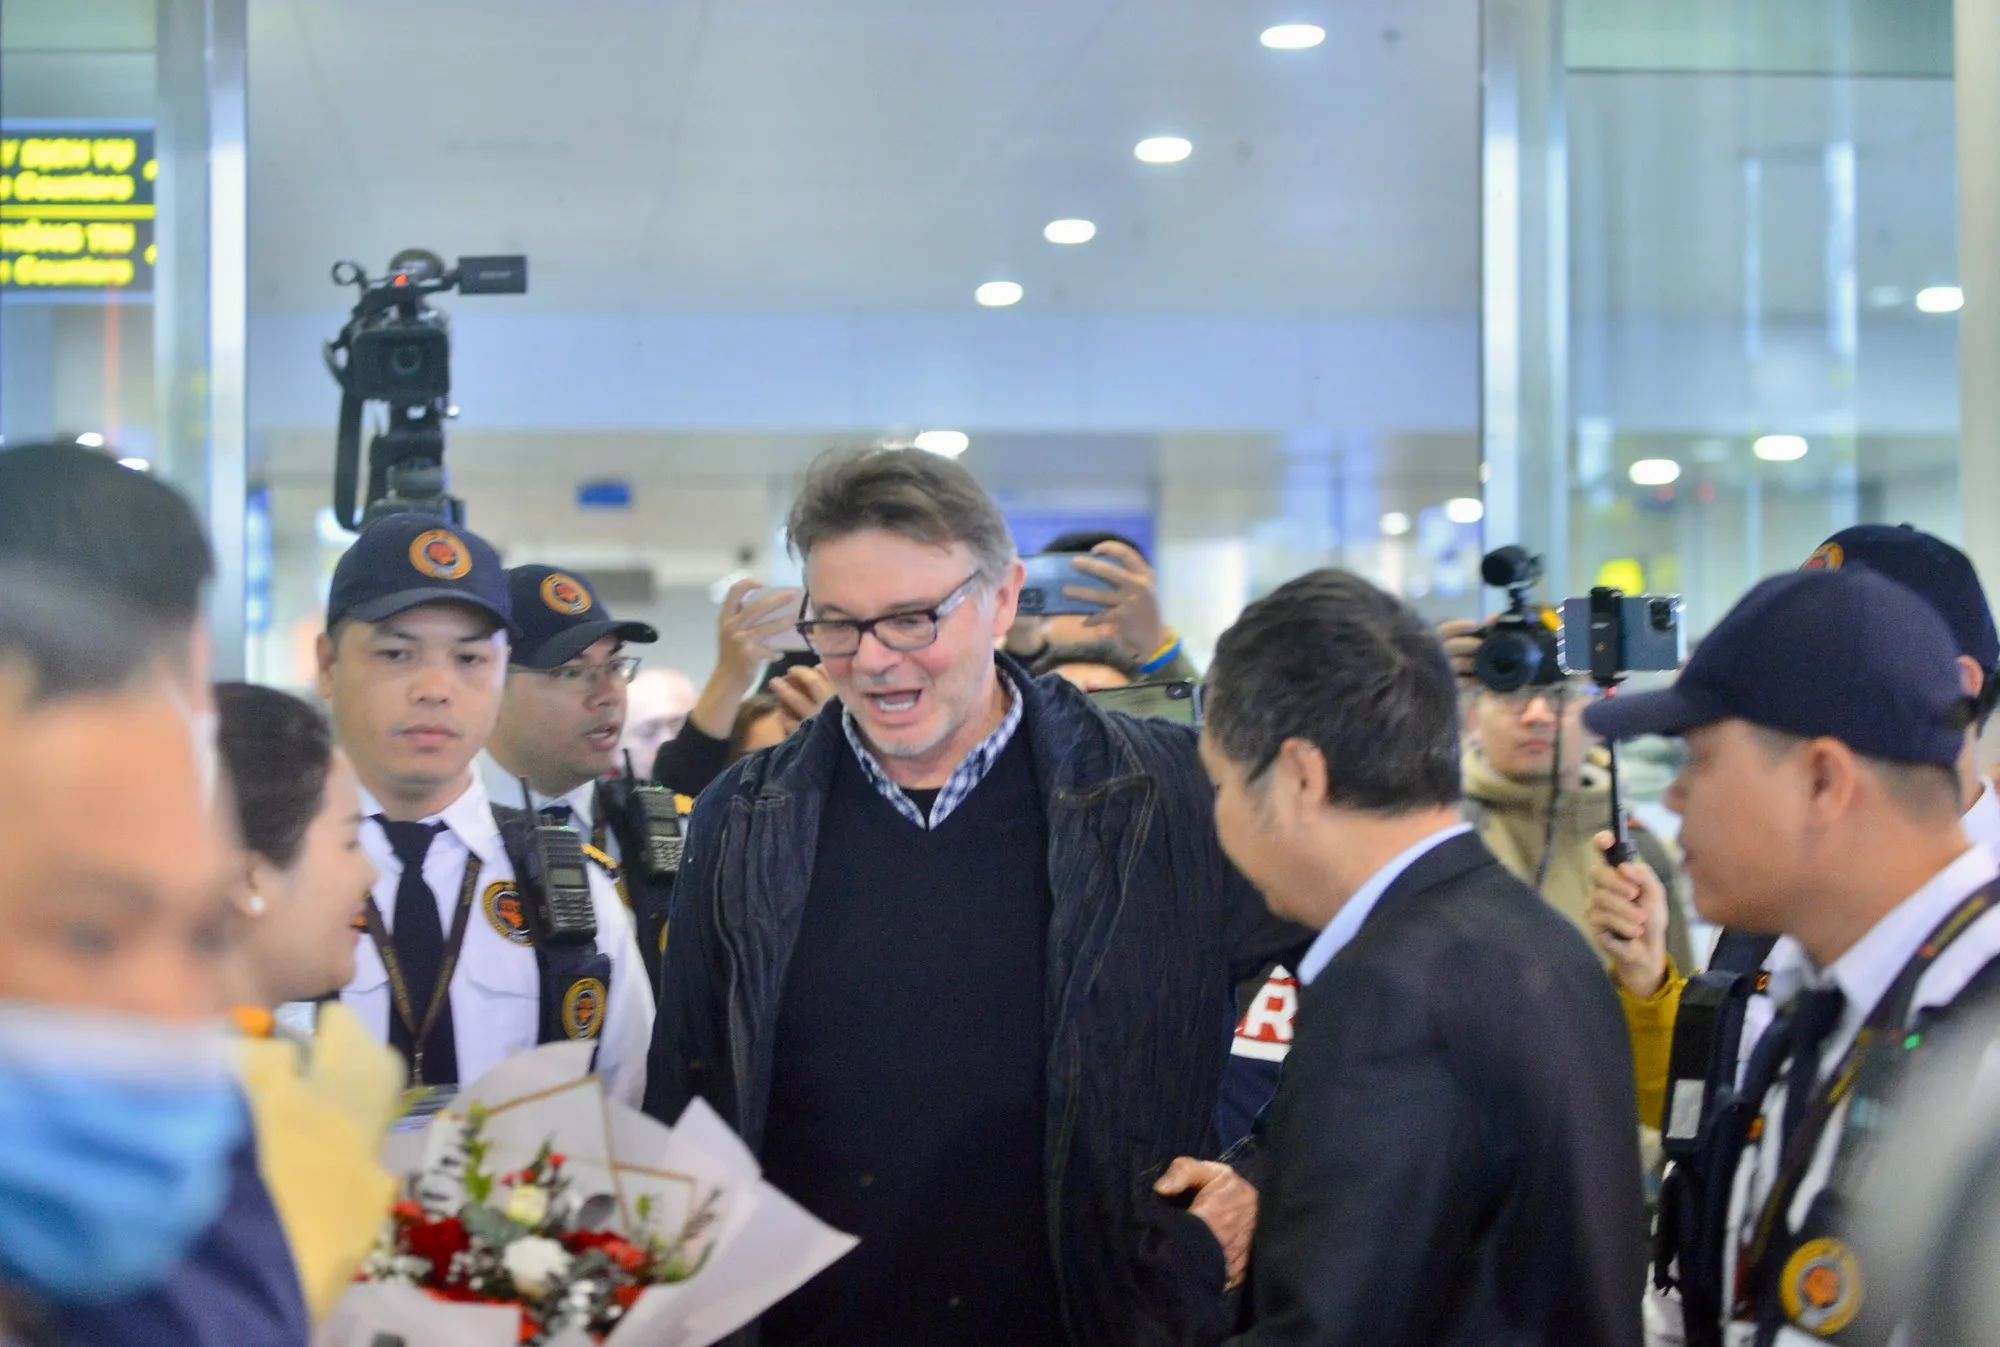 ông Philippe Troussier và các trợ lý người Pháp đã được chào đón nồng nhiệt tại sân bay Nội Bài.  